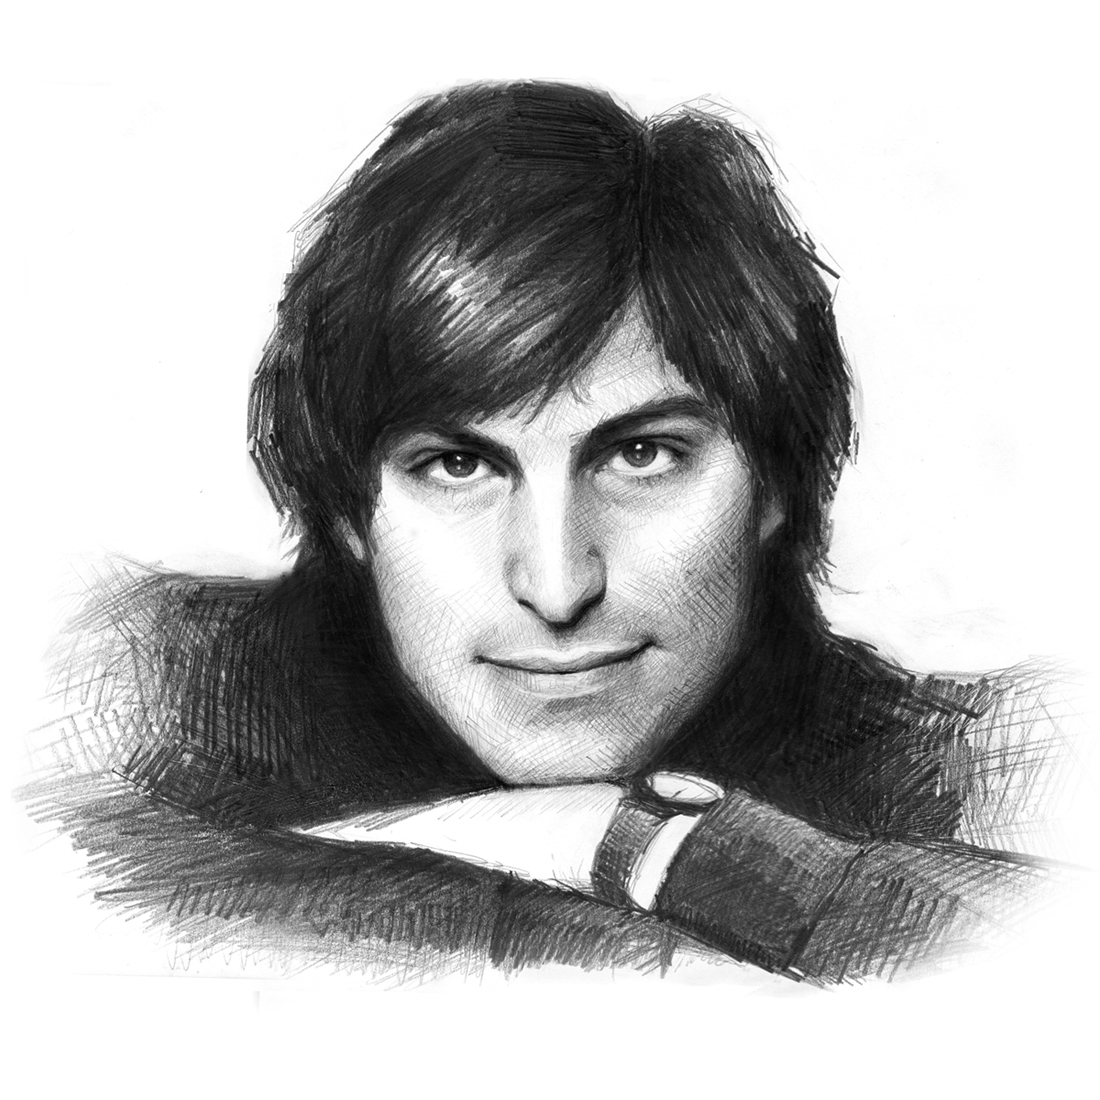 рисунок young Steve Jobs, фото, фотографии, обои для рабочего стола, молодой Стив Джобс, скачать рисунок